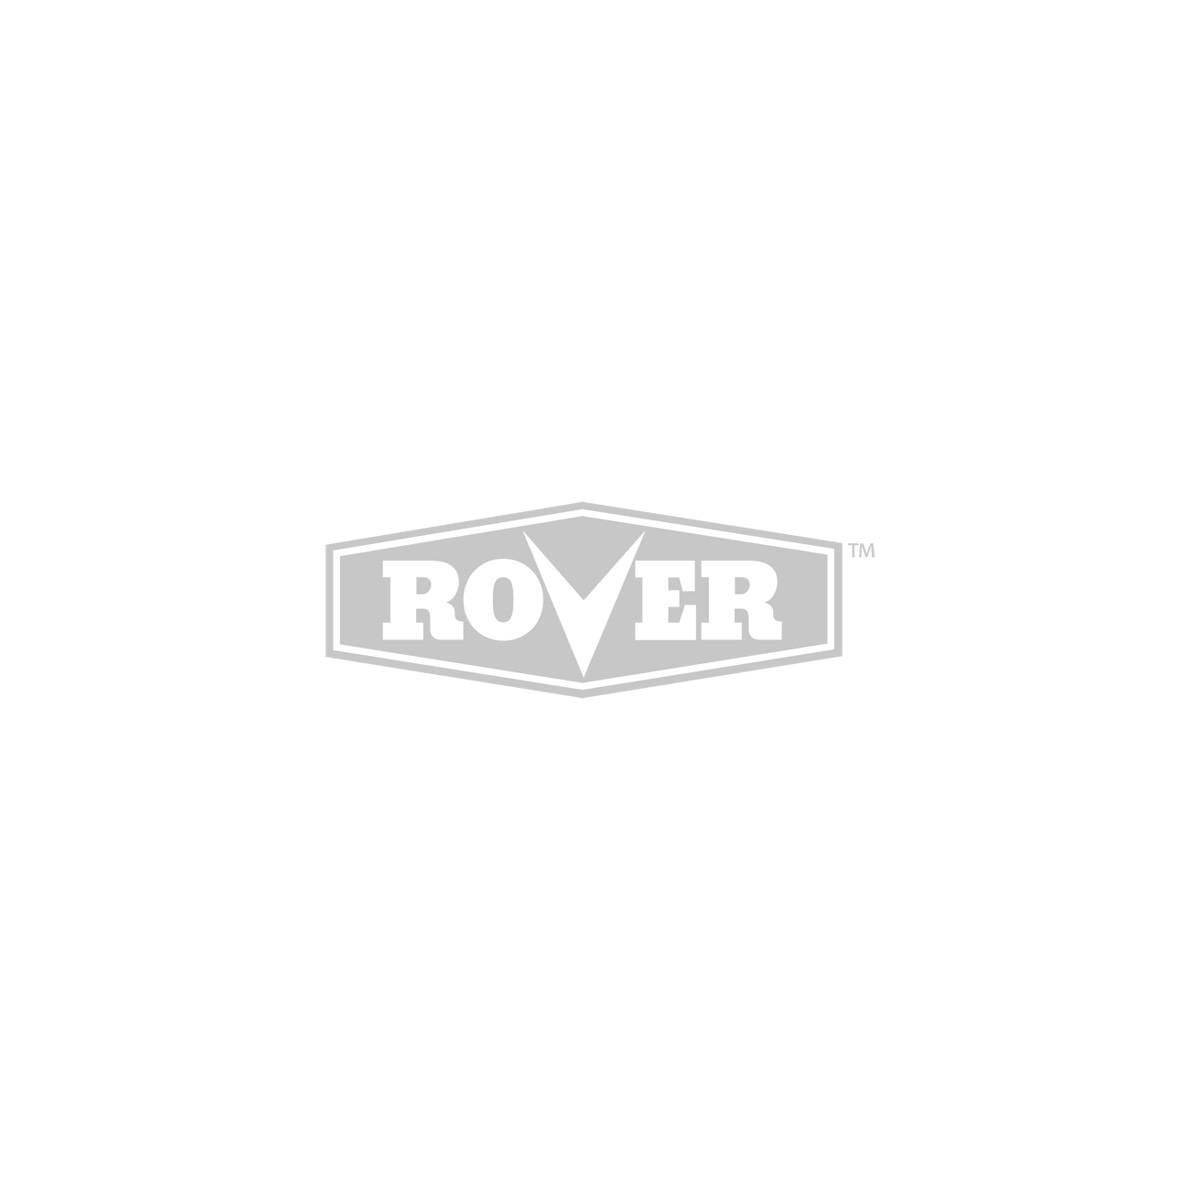 Rover Hi Wheeler Utility Mower